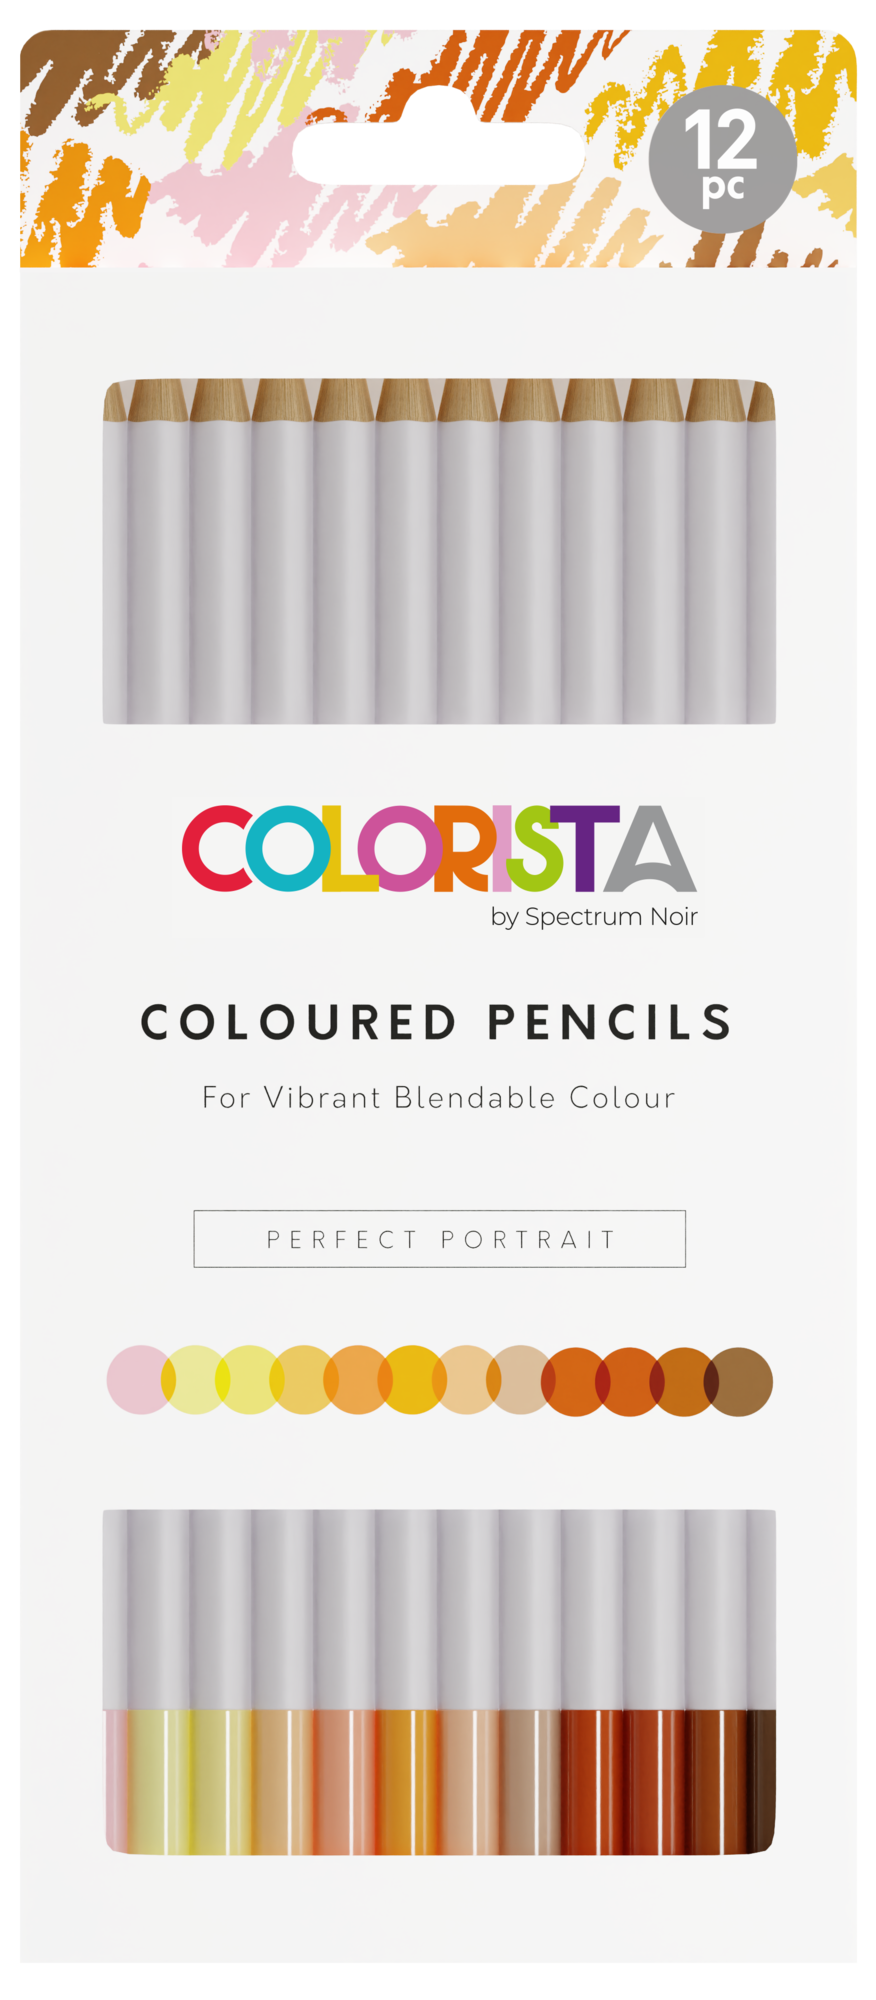 Spectrum Noir - Colorista - Colored Pencils - Perfect Portrait